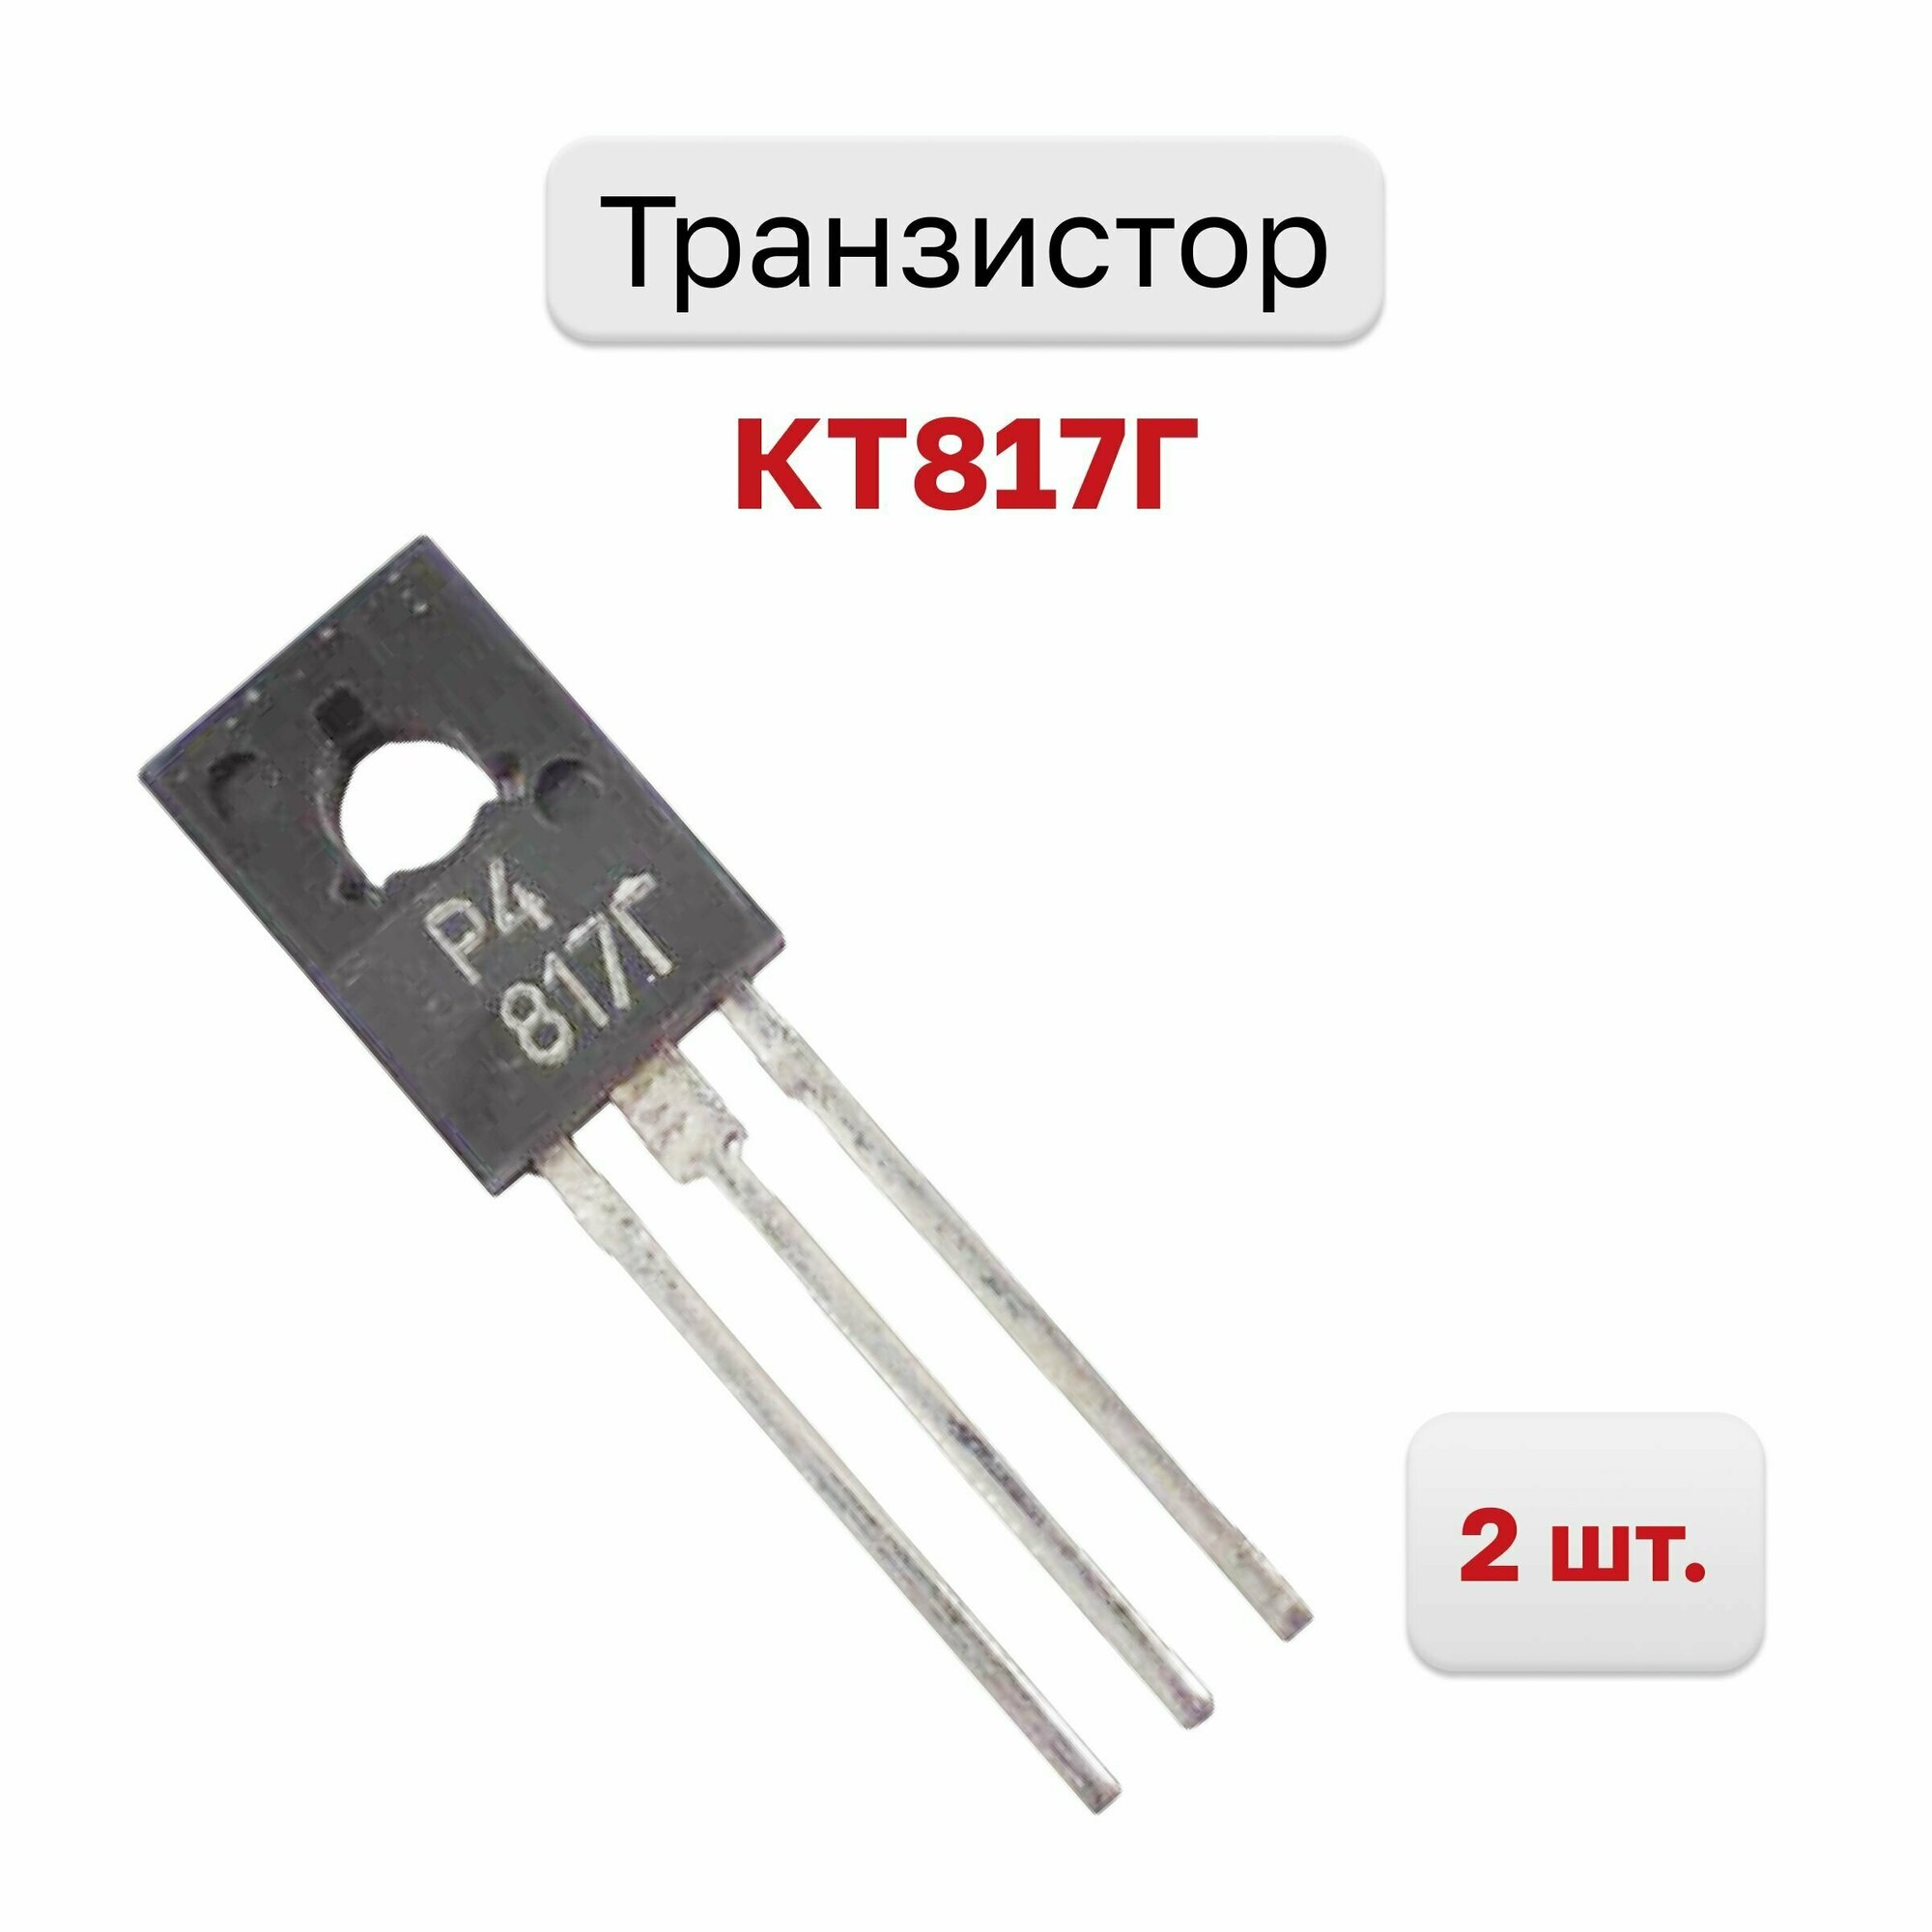 Транзистор КТ817Г, 2 шт.